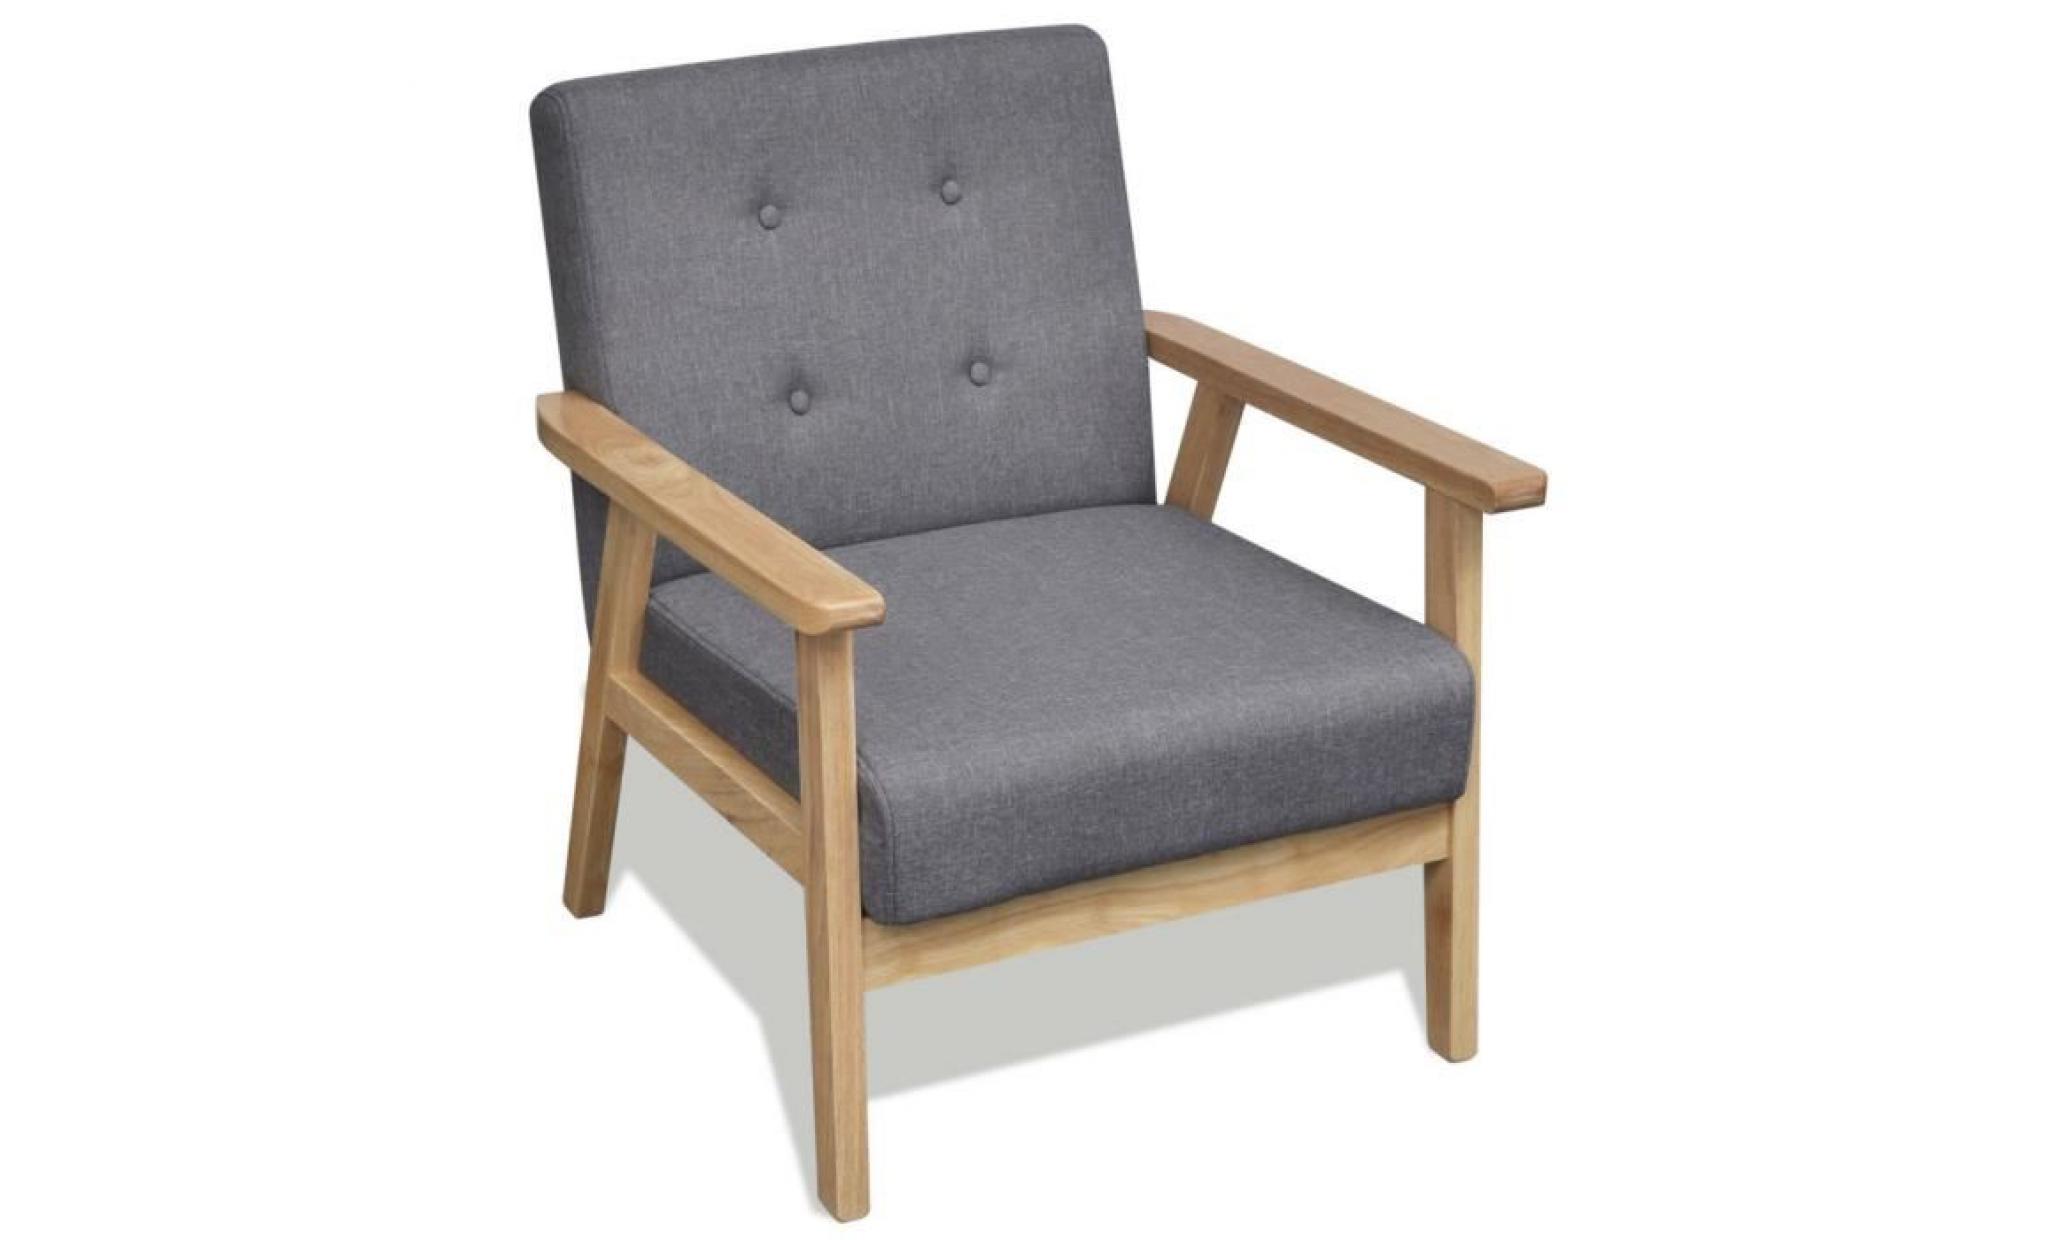 ce fauteuil, avec son design cool et rétro, sera le point de convergence de votre salon ou votre endroit préféré. il est idéal pour